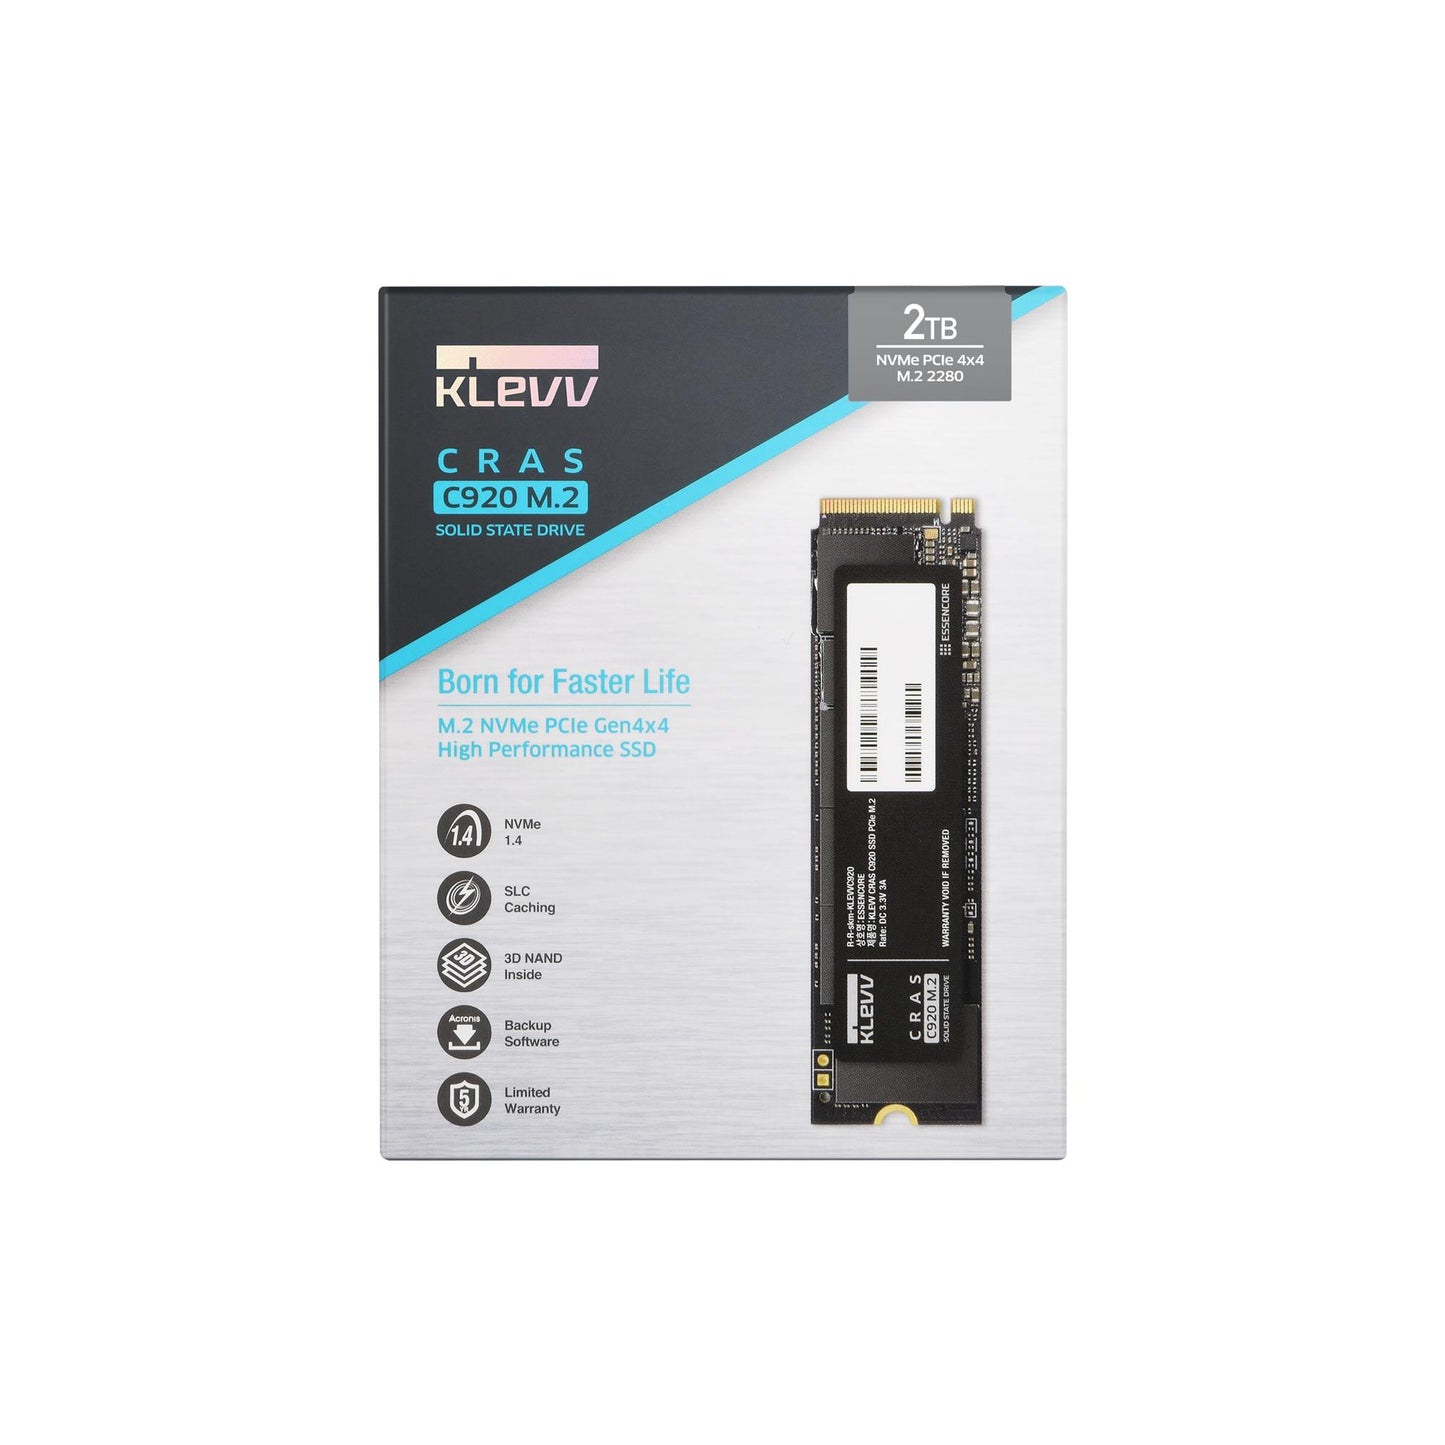 KLEVV CRAS C920 SSD M.2 NVMe PCIe Gen4x4 2TB